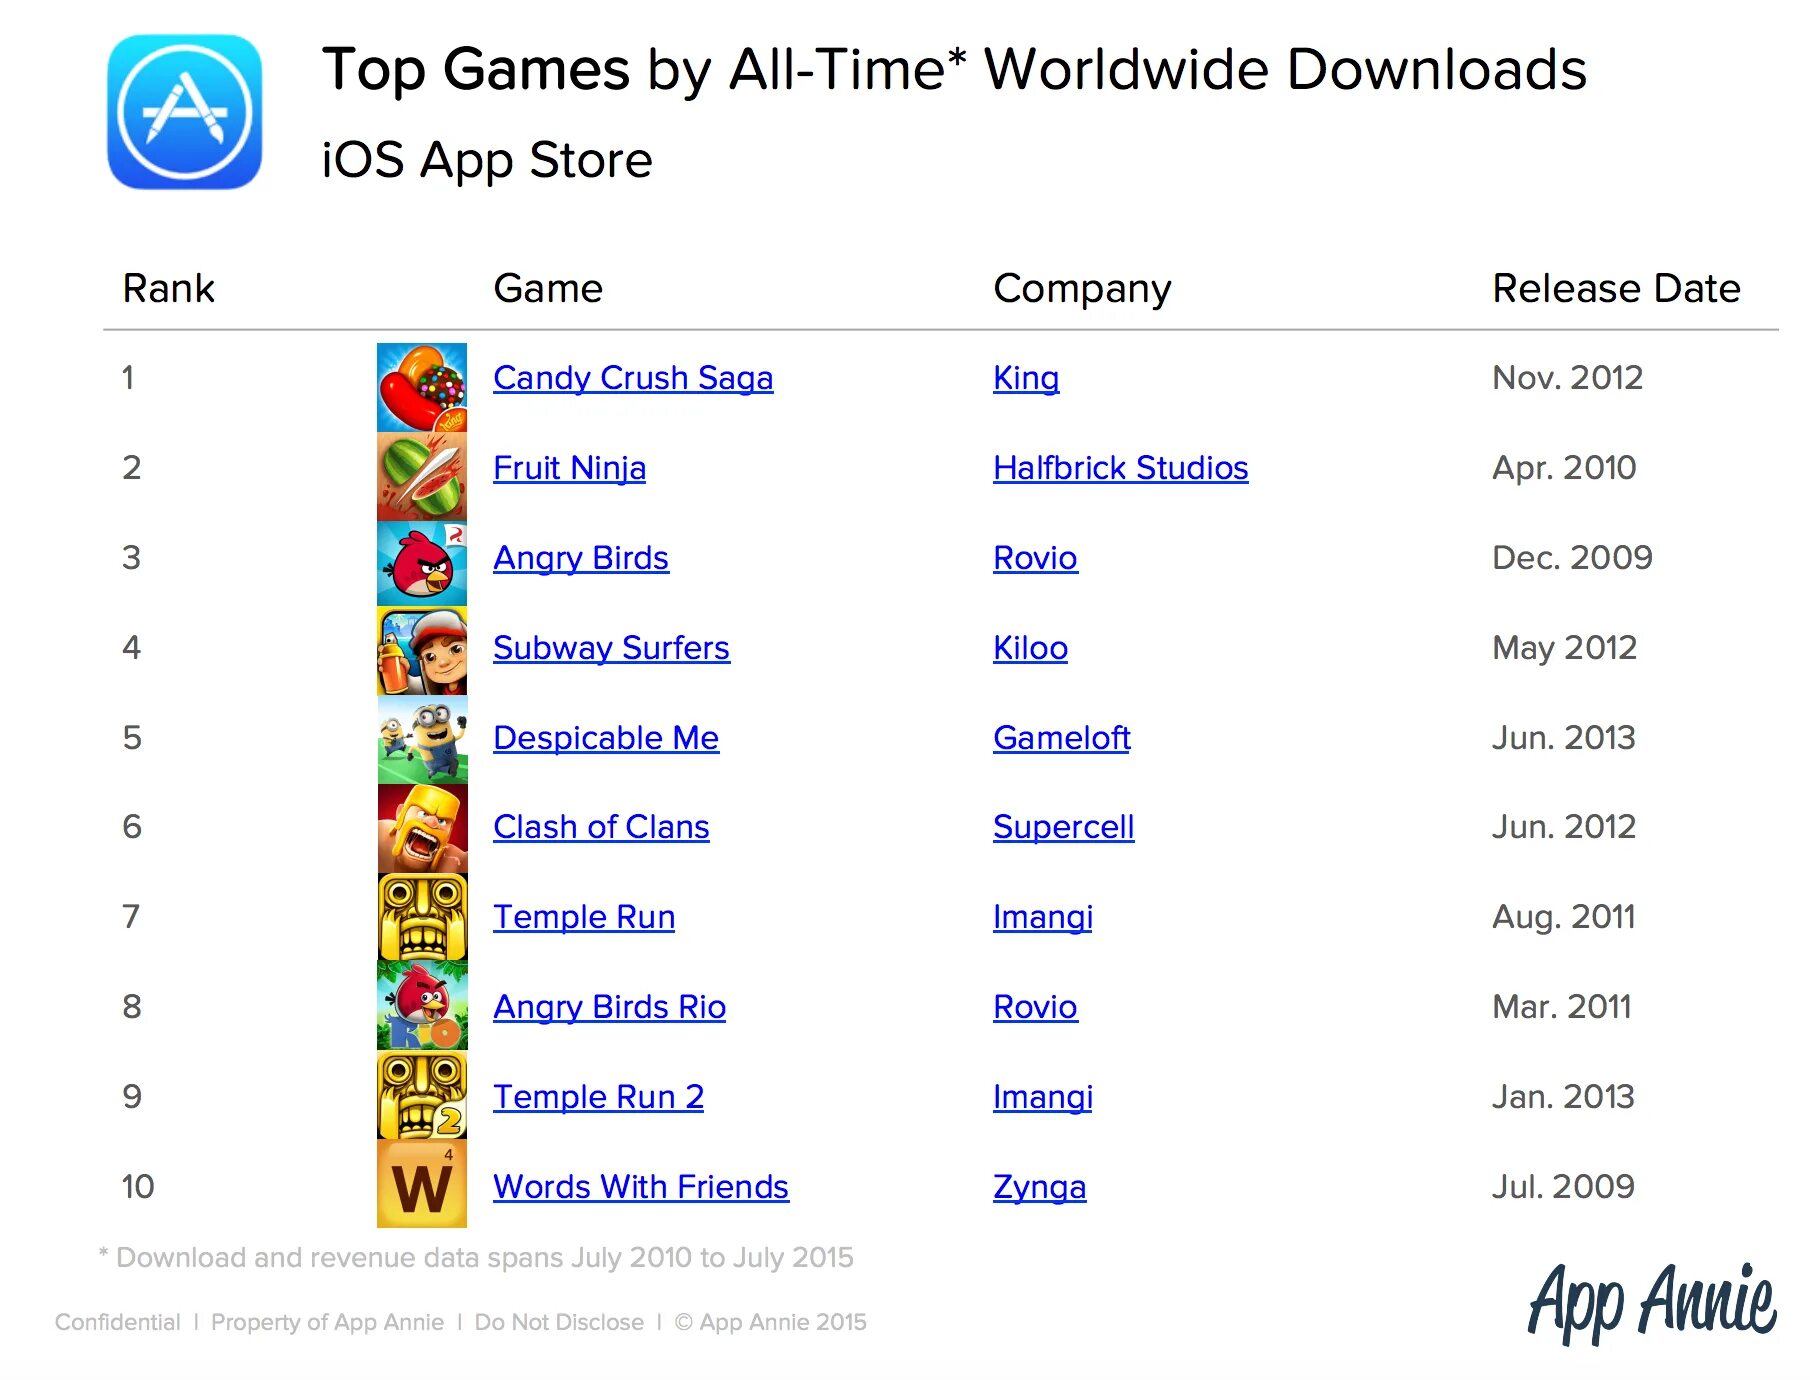 Рейтинг лучших игр года. Список самых популярных игр. Популярные игры список. Список самых популярных мобильных игр. Какая игра на 1 месте.